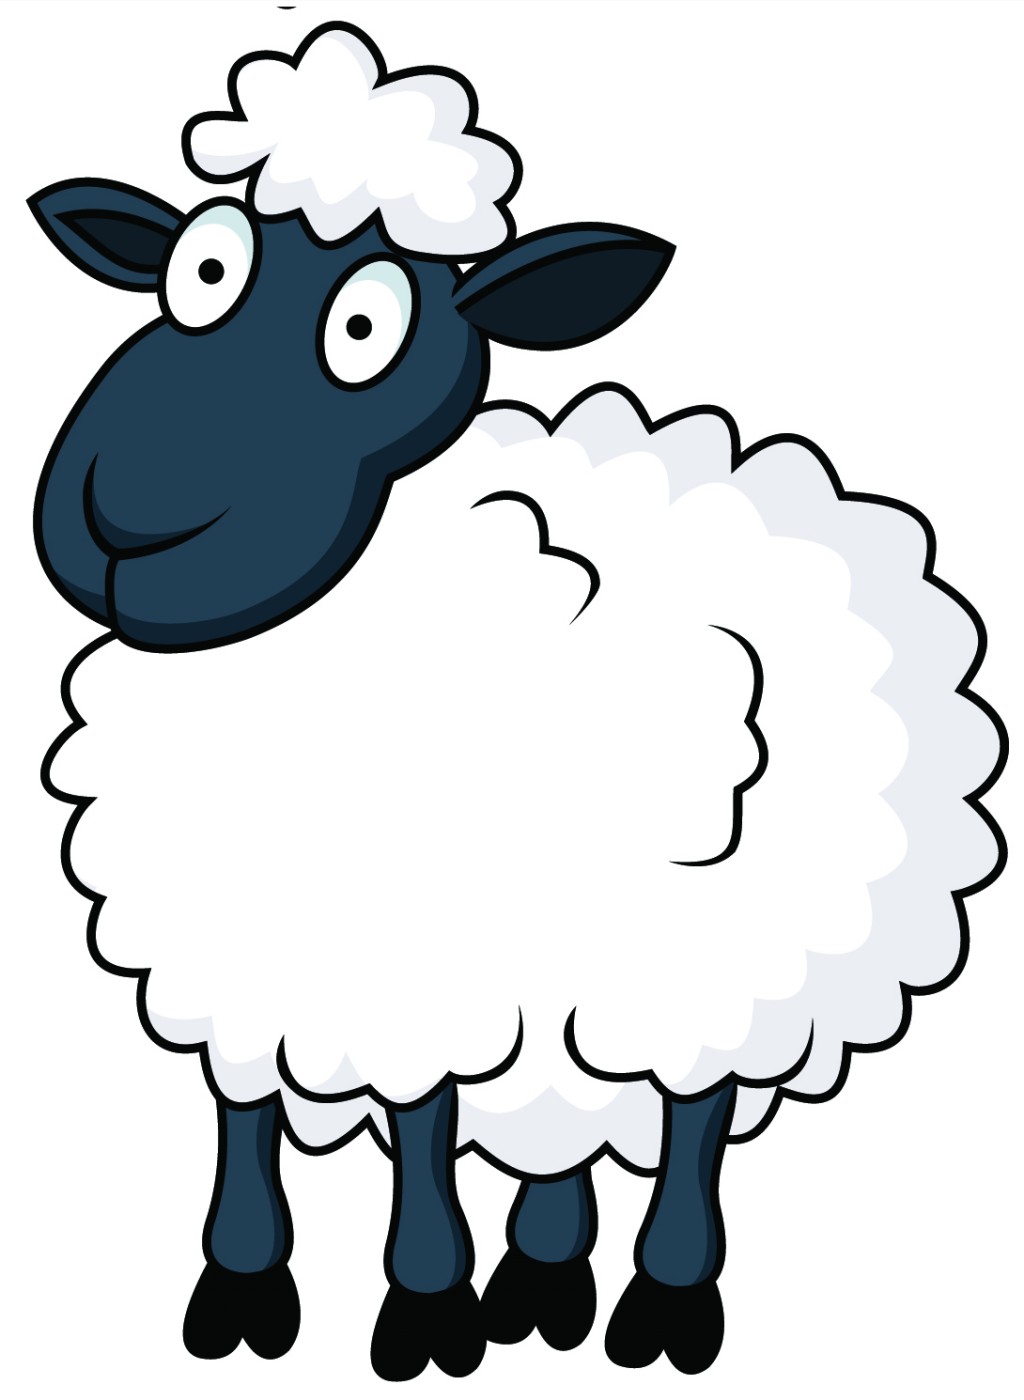 sheep clipart cartoon